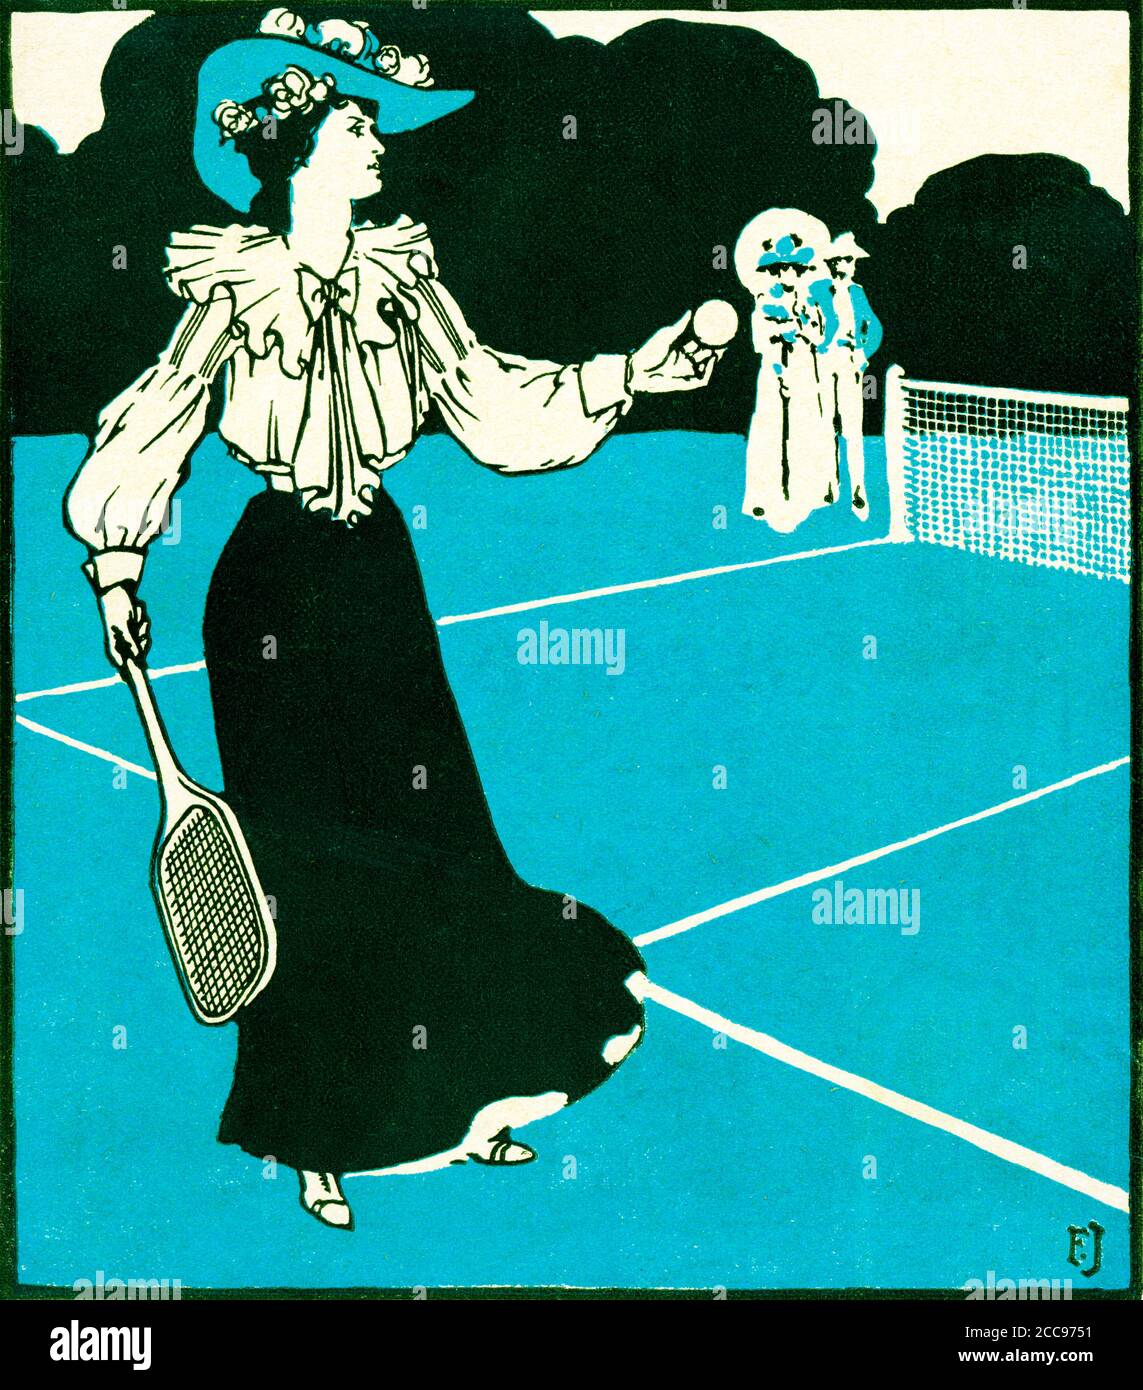 Listo para servir, Edwardian ilustración de una dama de moda en la pista de tenis, pelota en la mano Foto de stock